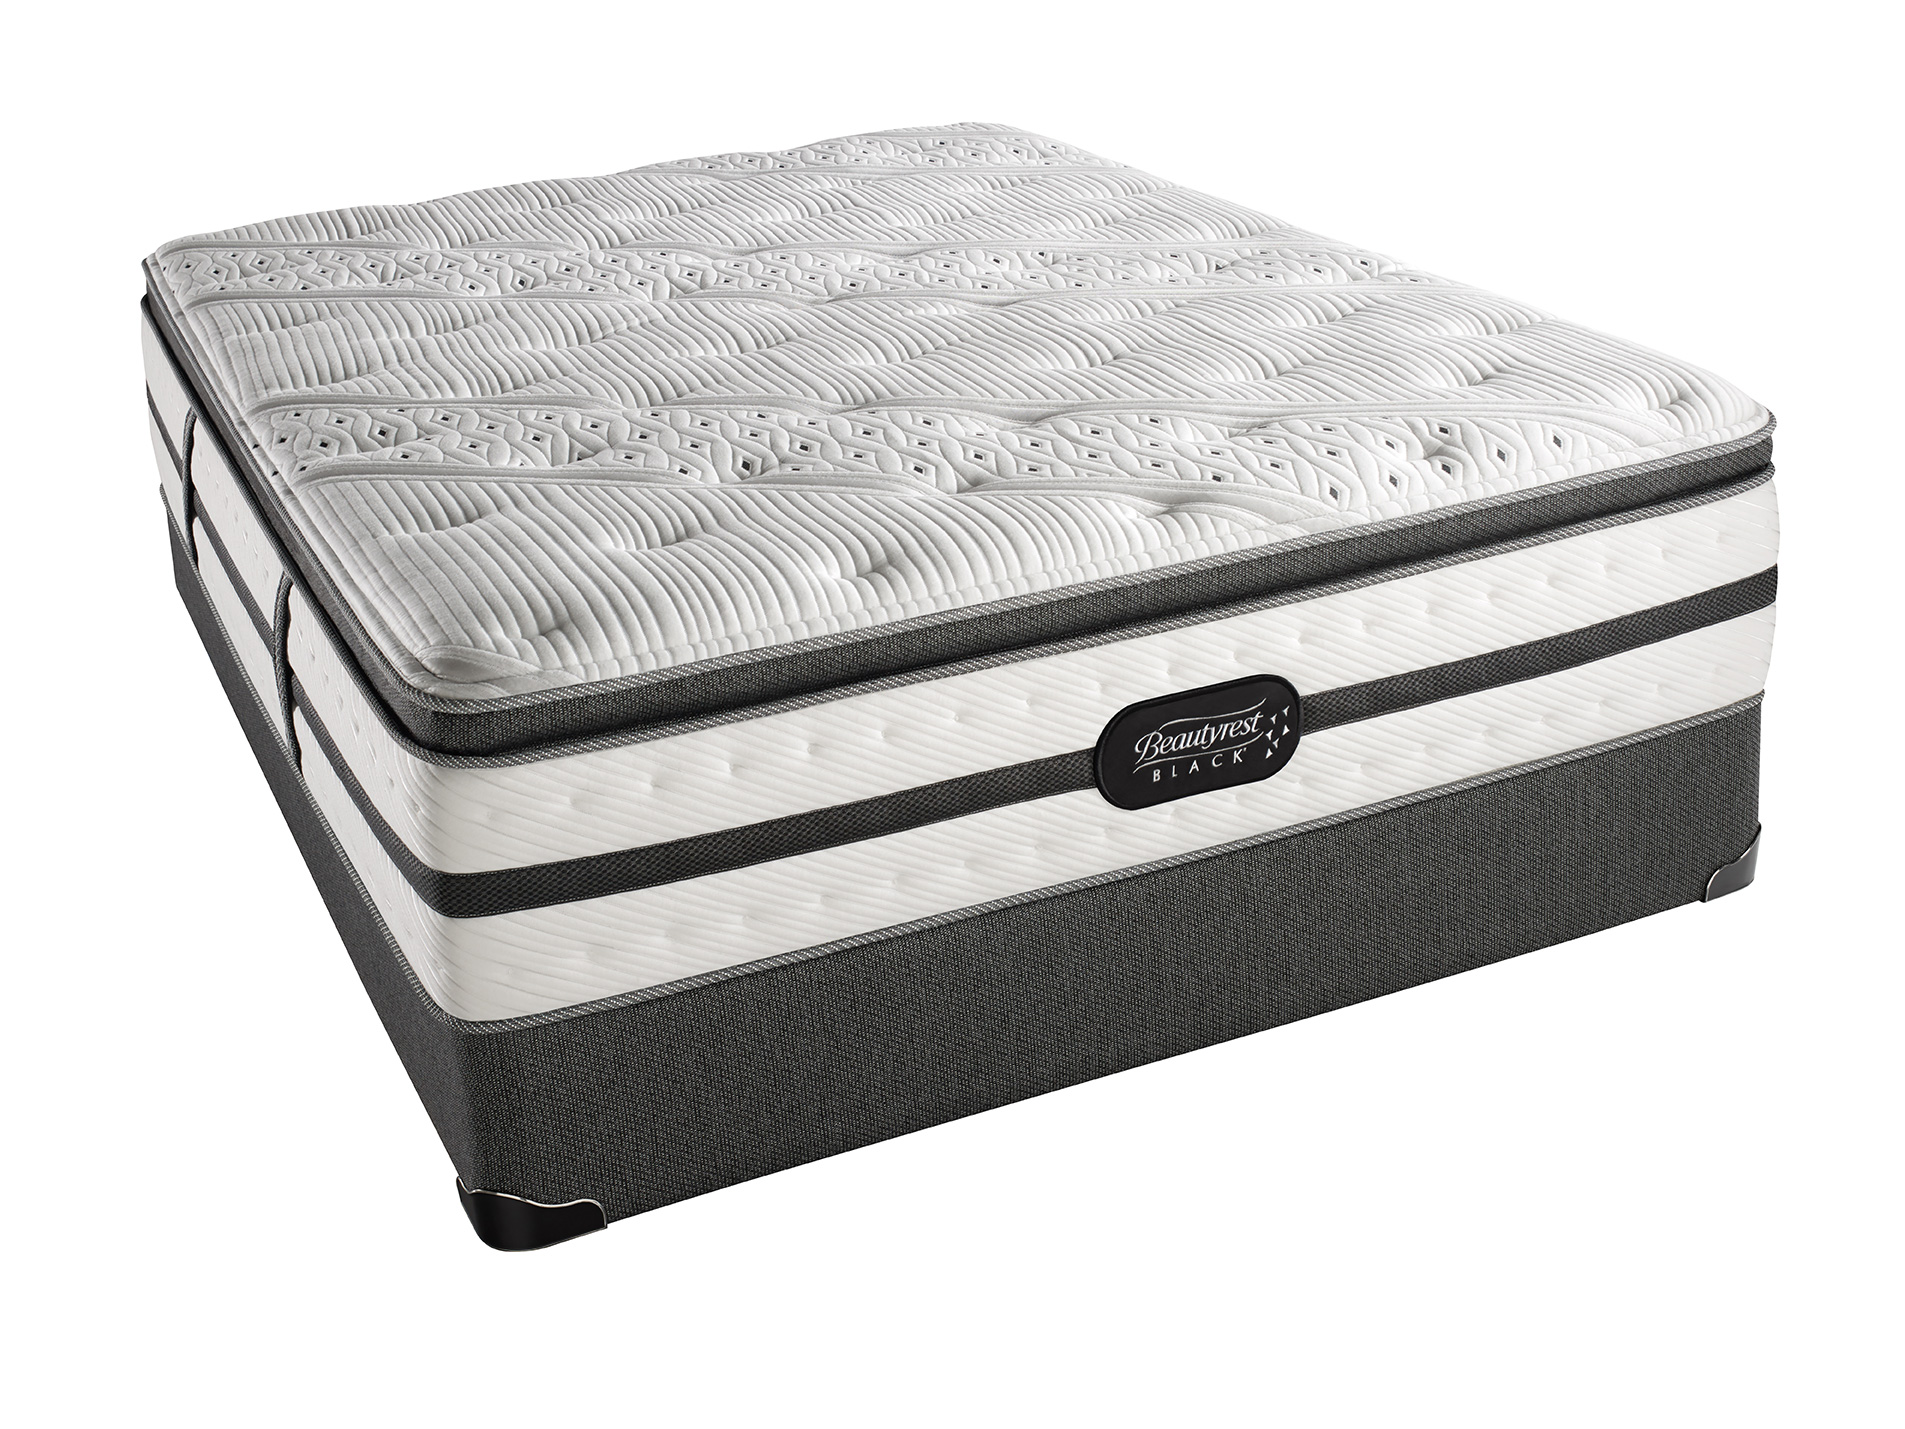 beautyrest hospitality pillow top mattress